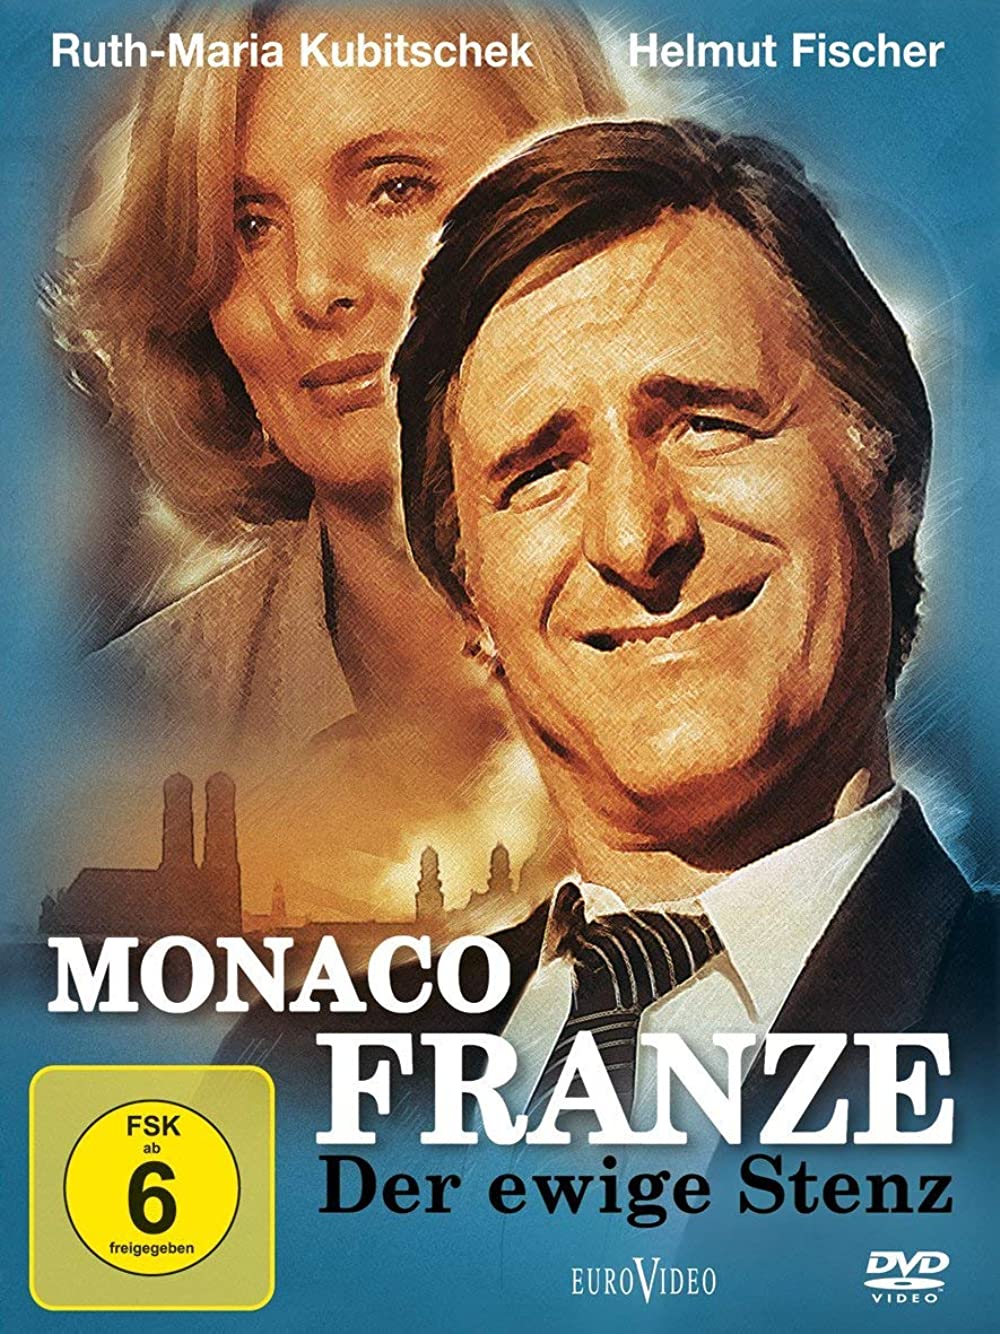 Filmbeschreibung zu Monaco Franze - Der ewige Stenz